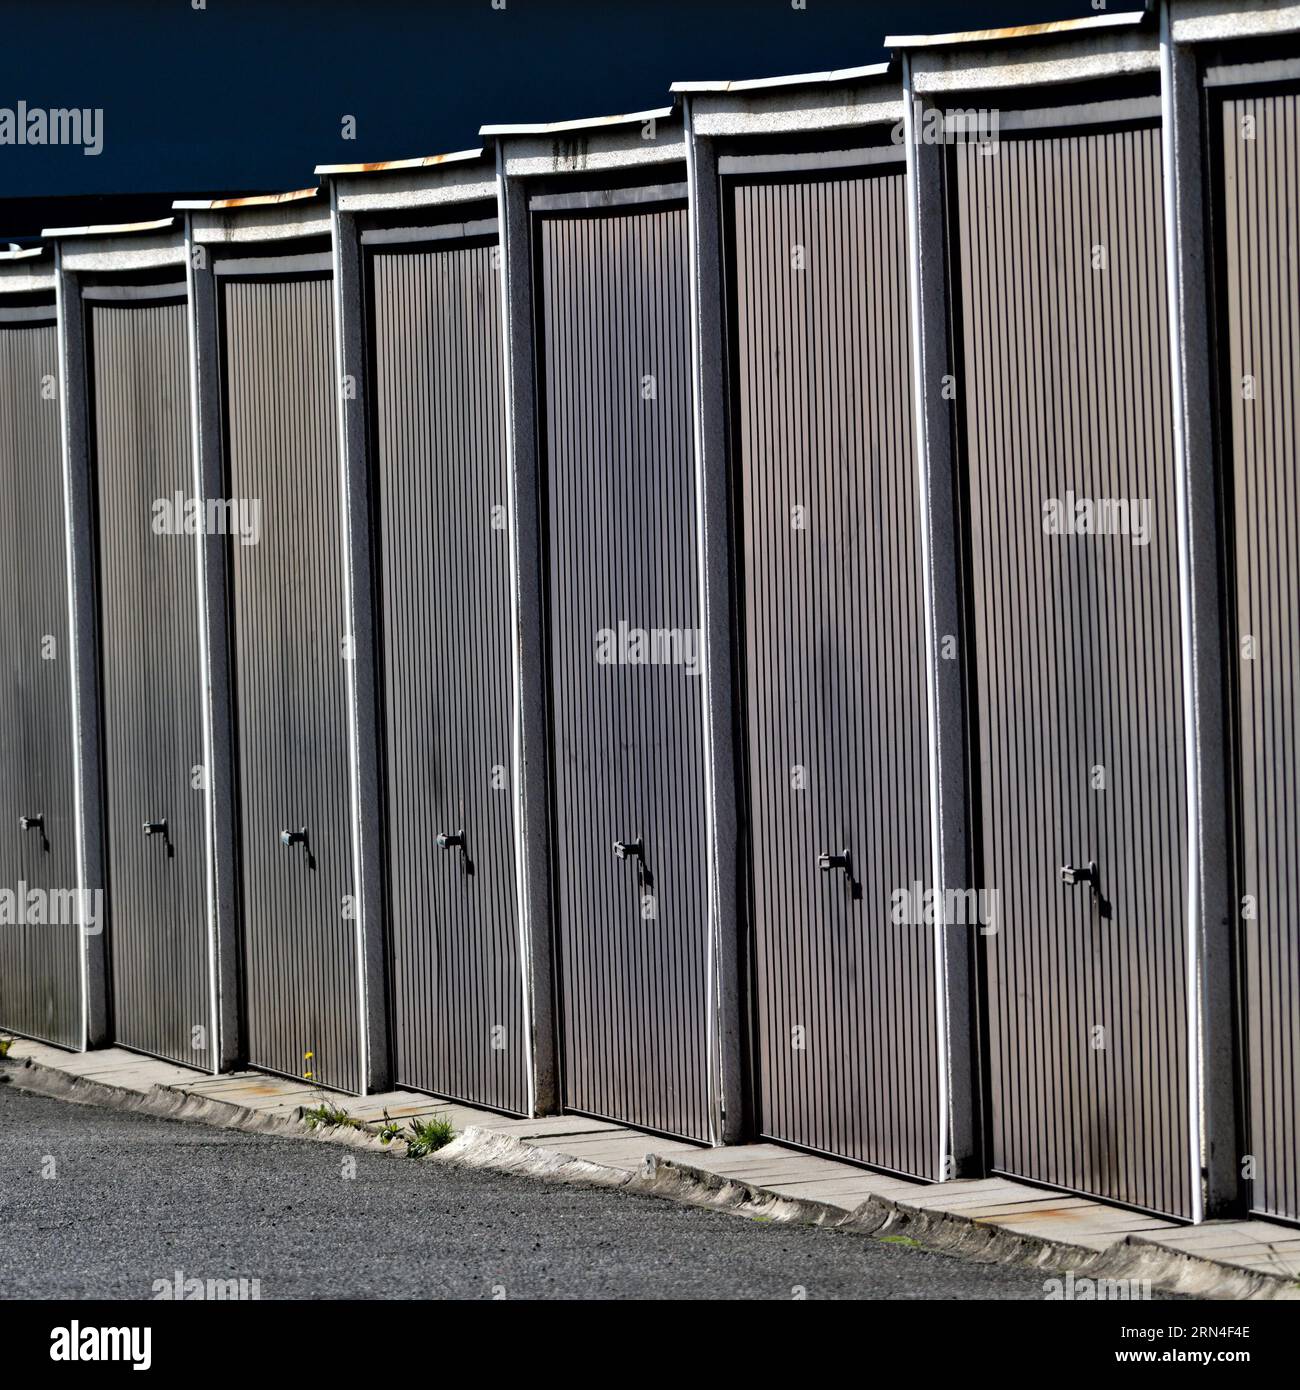 Reihe alter Garagen mit Metalltüren in der Nähe des Wohnviertels. Stadtfoto. Roznov Pod Radhostem, Tschechische republik. Stockfoto